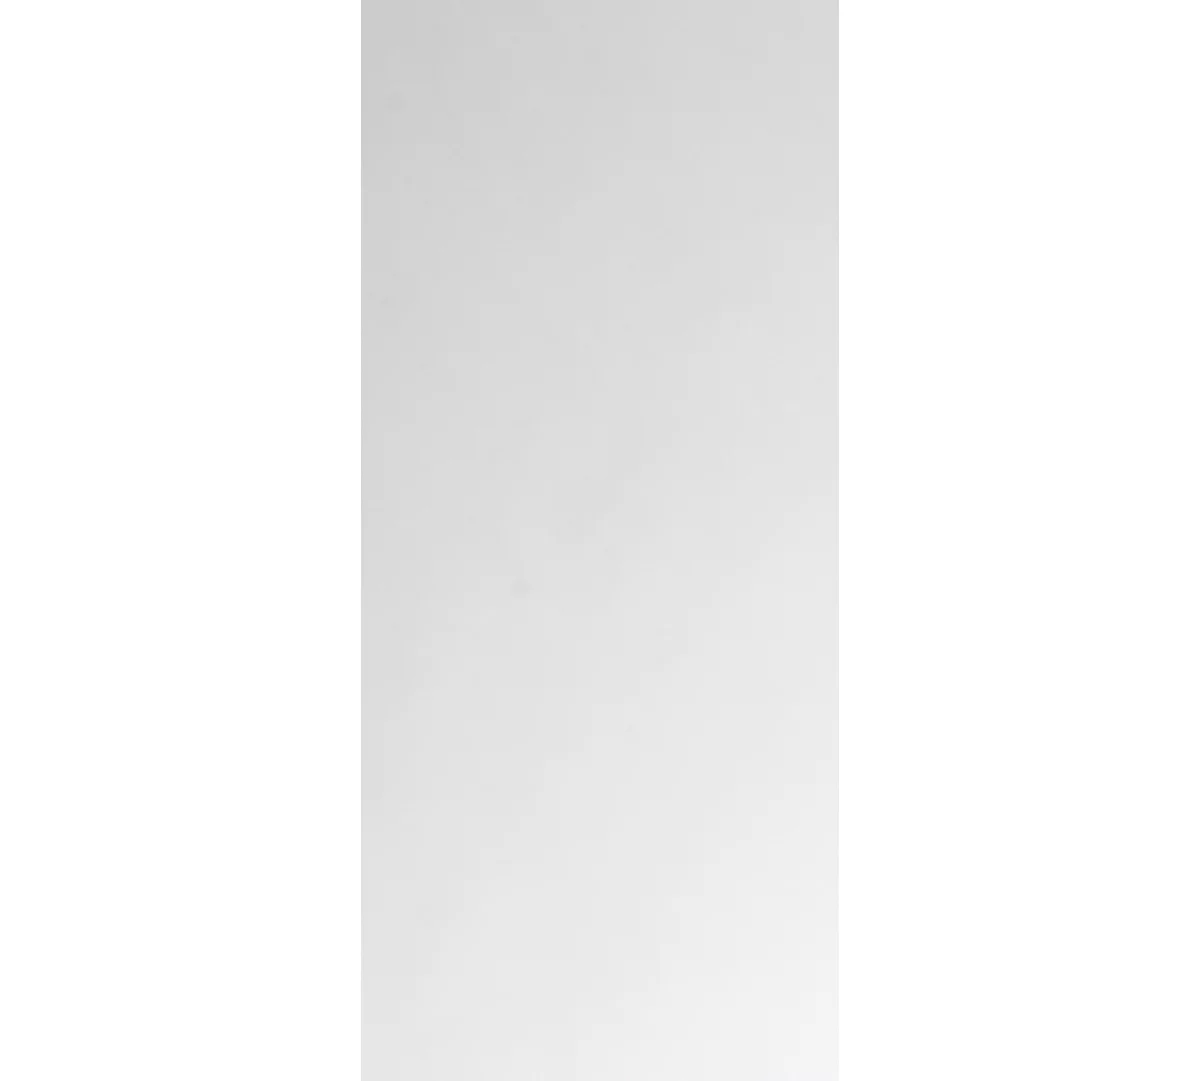 NowyStyl stapelstoelenset ISO BASIC, zonder armleuningen, stapelbaar tot 12 stuks, bekleding antraciet, frame chroom zilver, 8 stuks